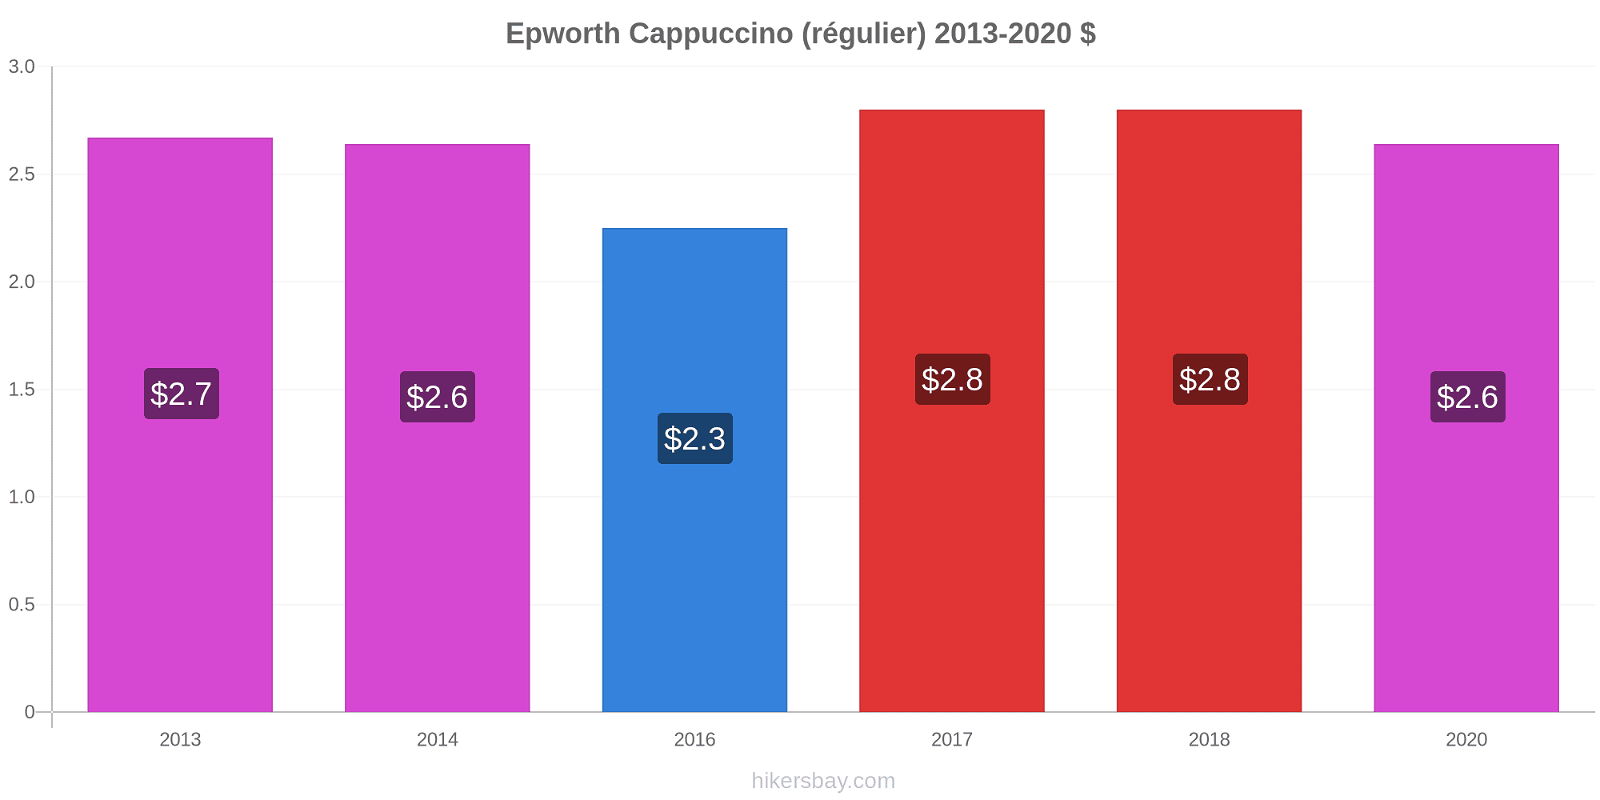 Epworth changements de prix Cappuccino (régulier) hikersbay.com